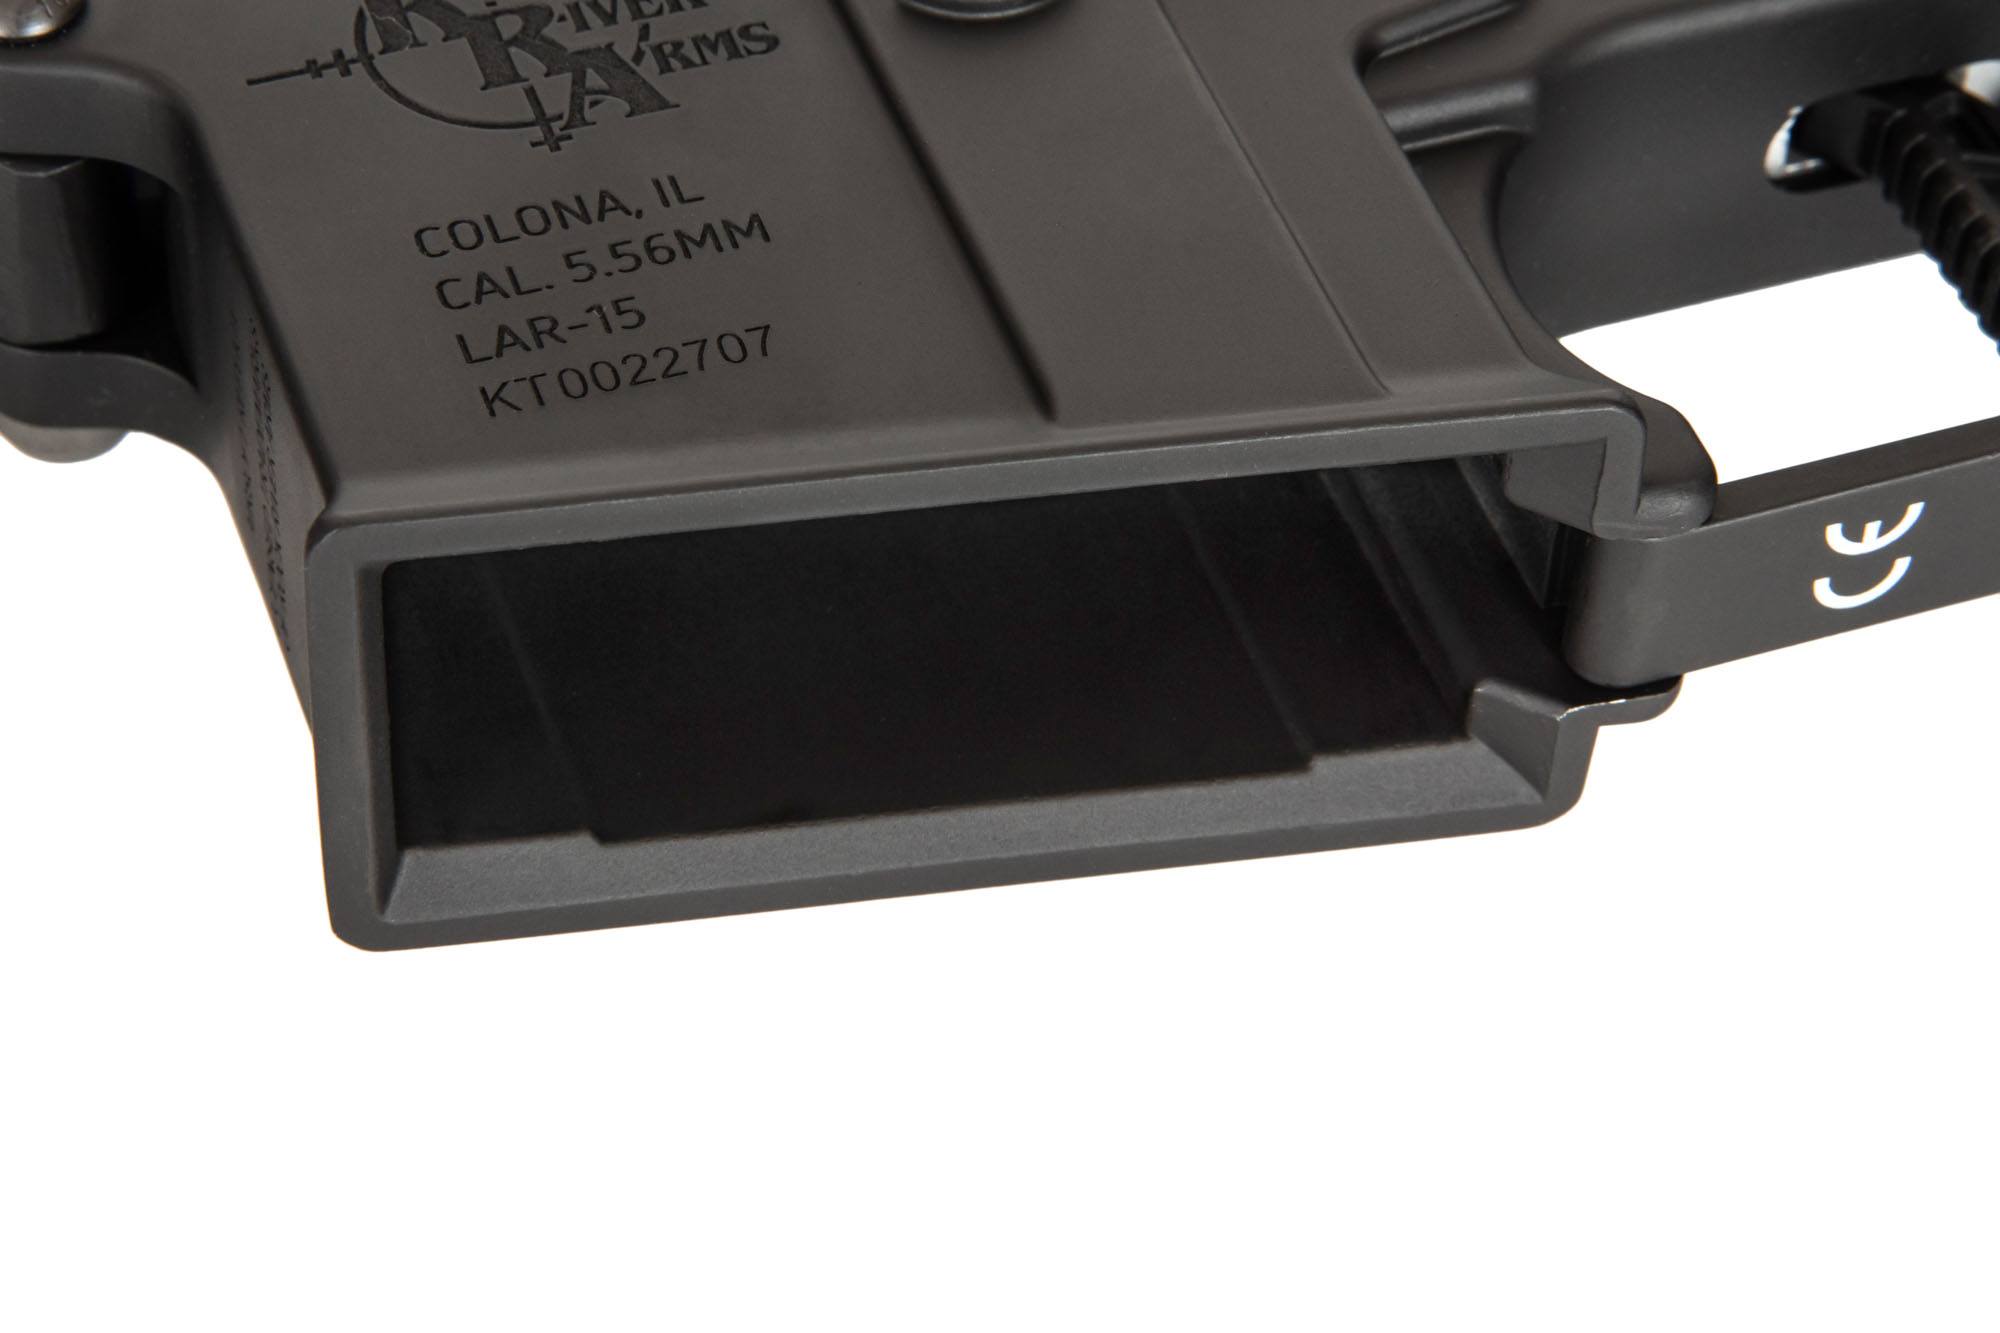 RRA SA-E07 EDGE ™ 2.0 Carbine Replica - Black by Specna Arms on Airsoft Mania Europe